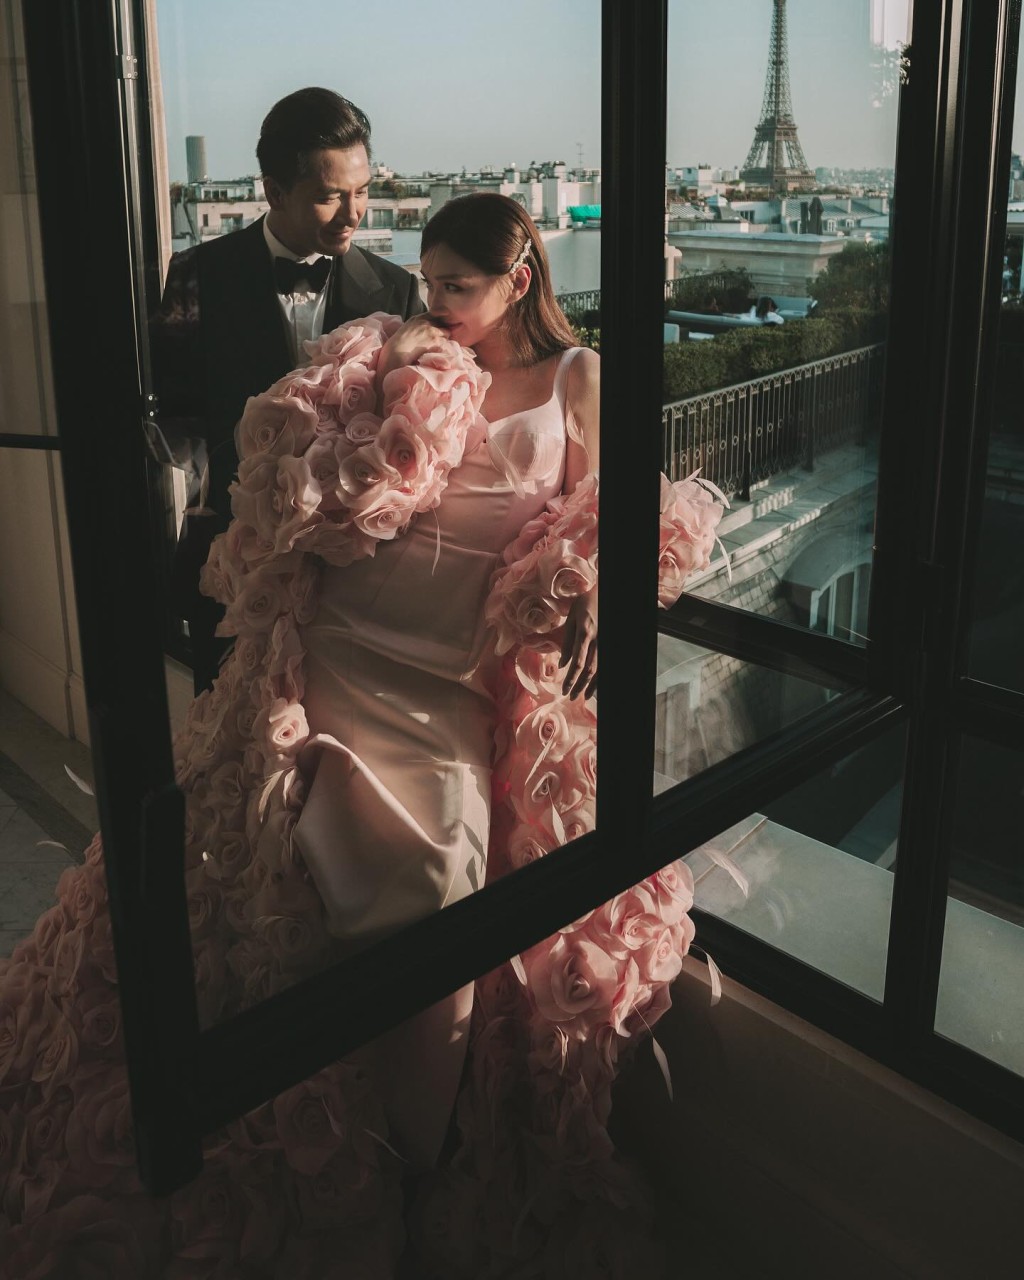 馬國明和湯洛雯在社交網分享在巴黎拍攝的婚照。